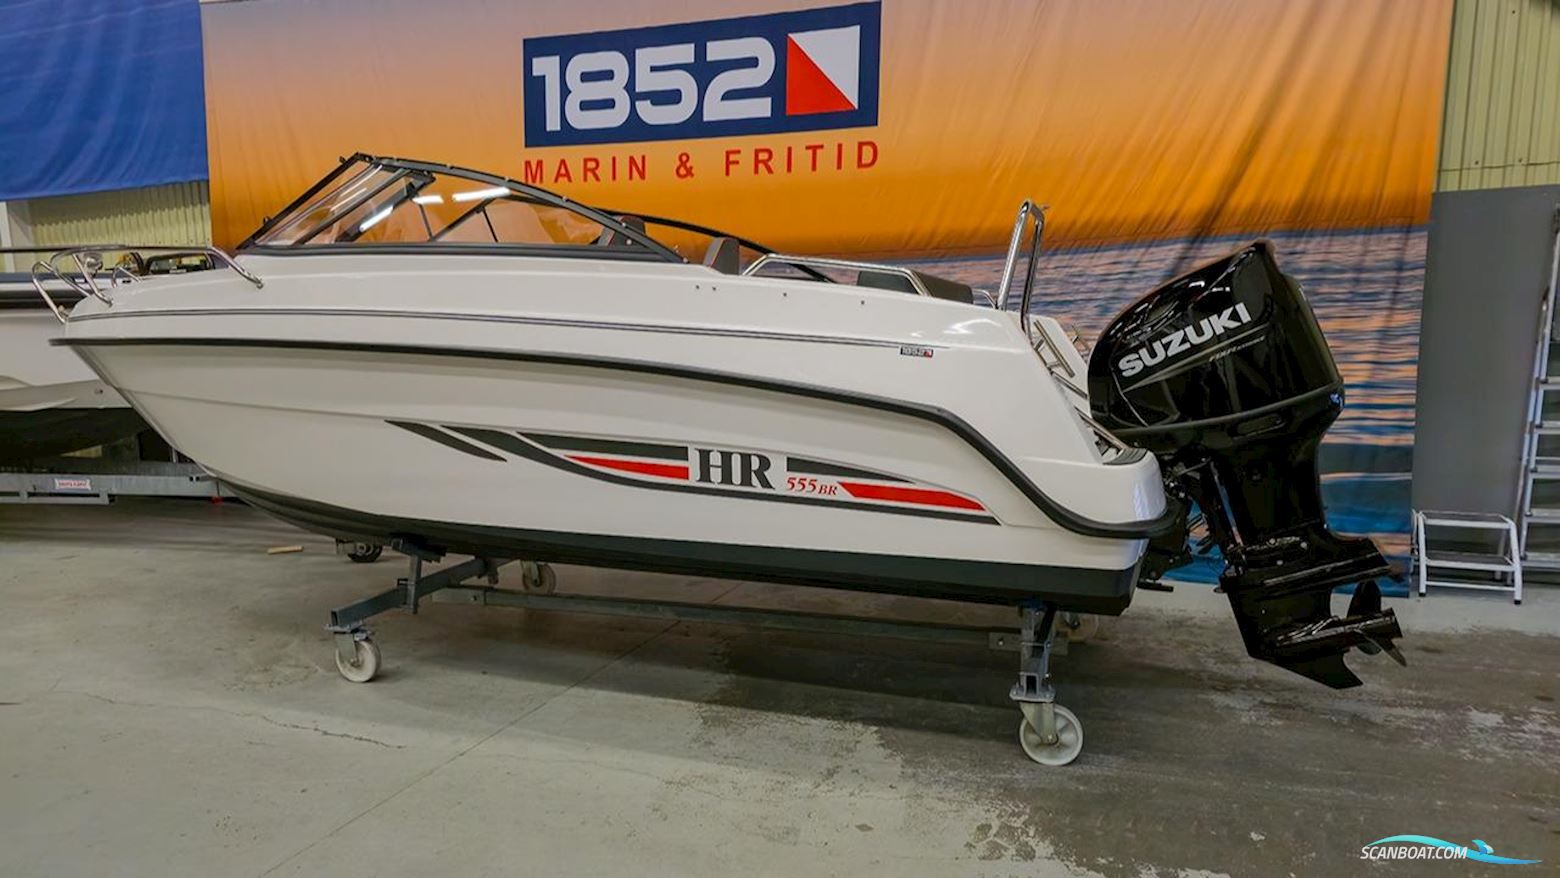 Hr 555 BR Motorbåd 2022, med Suzuki motor, Sverige